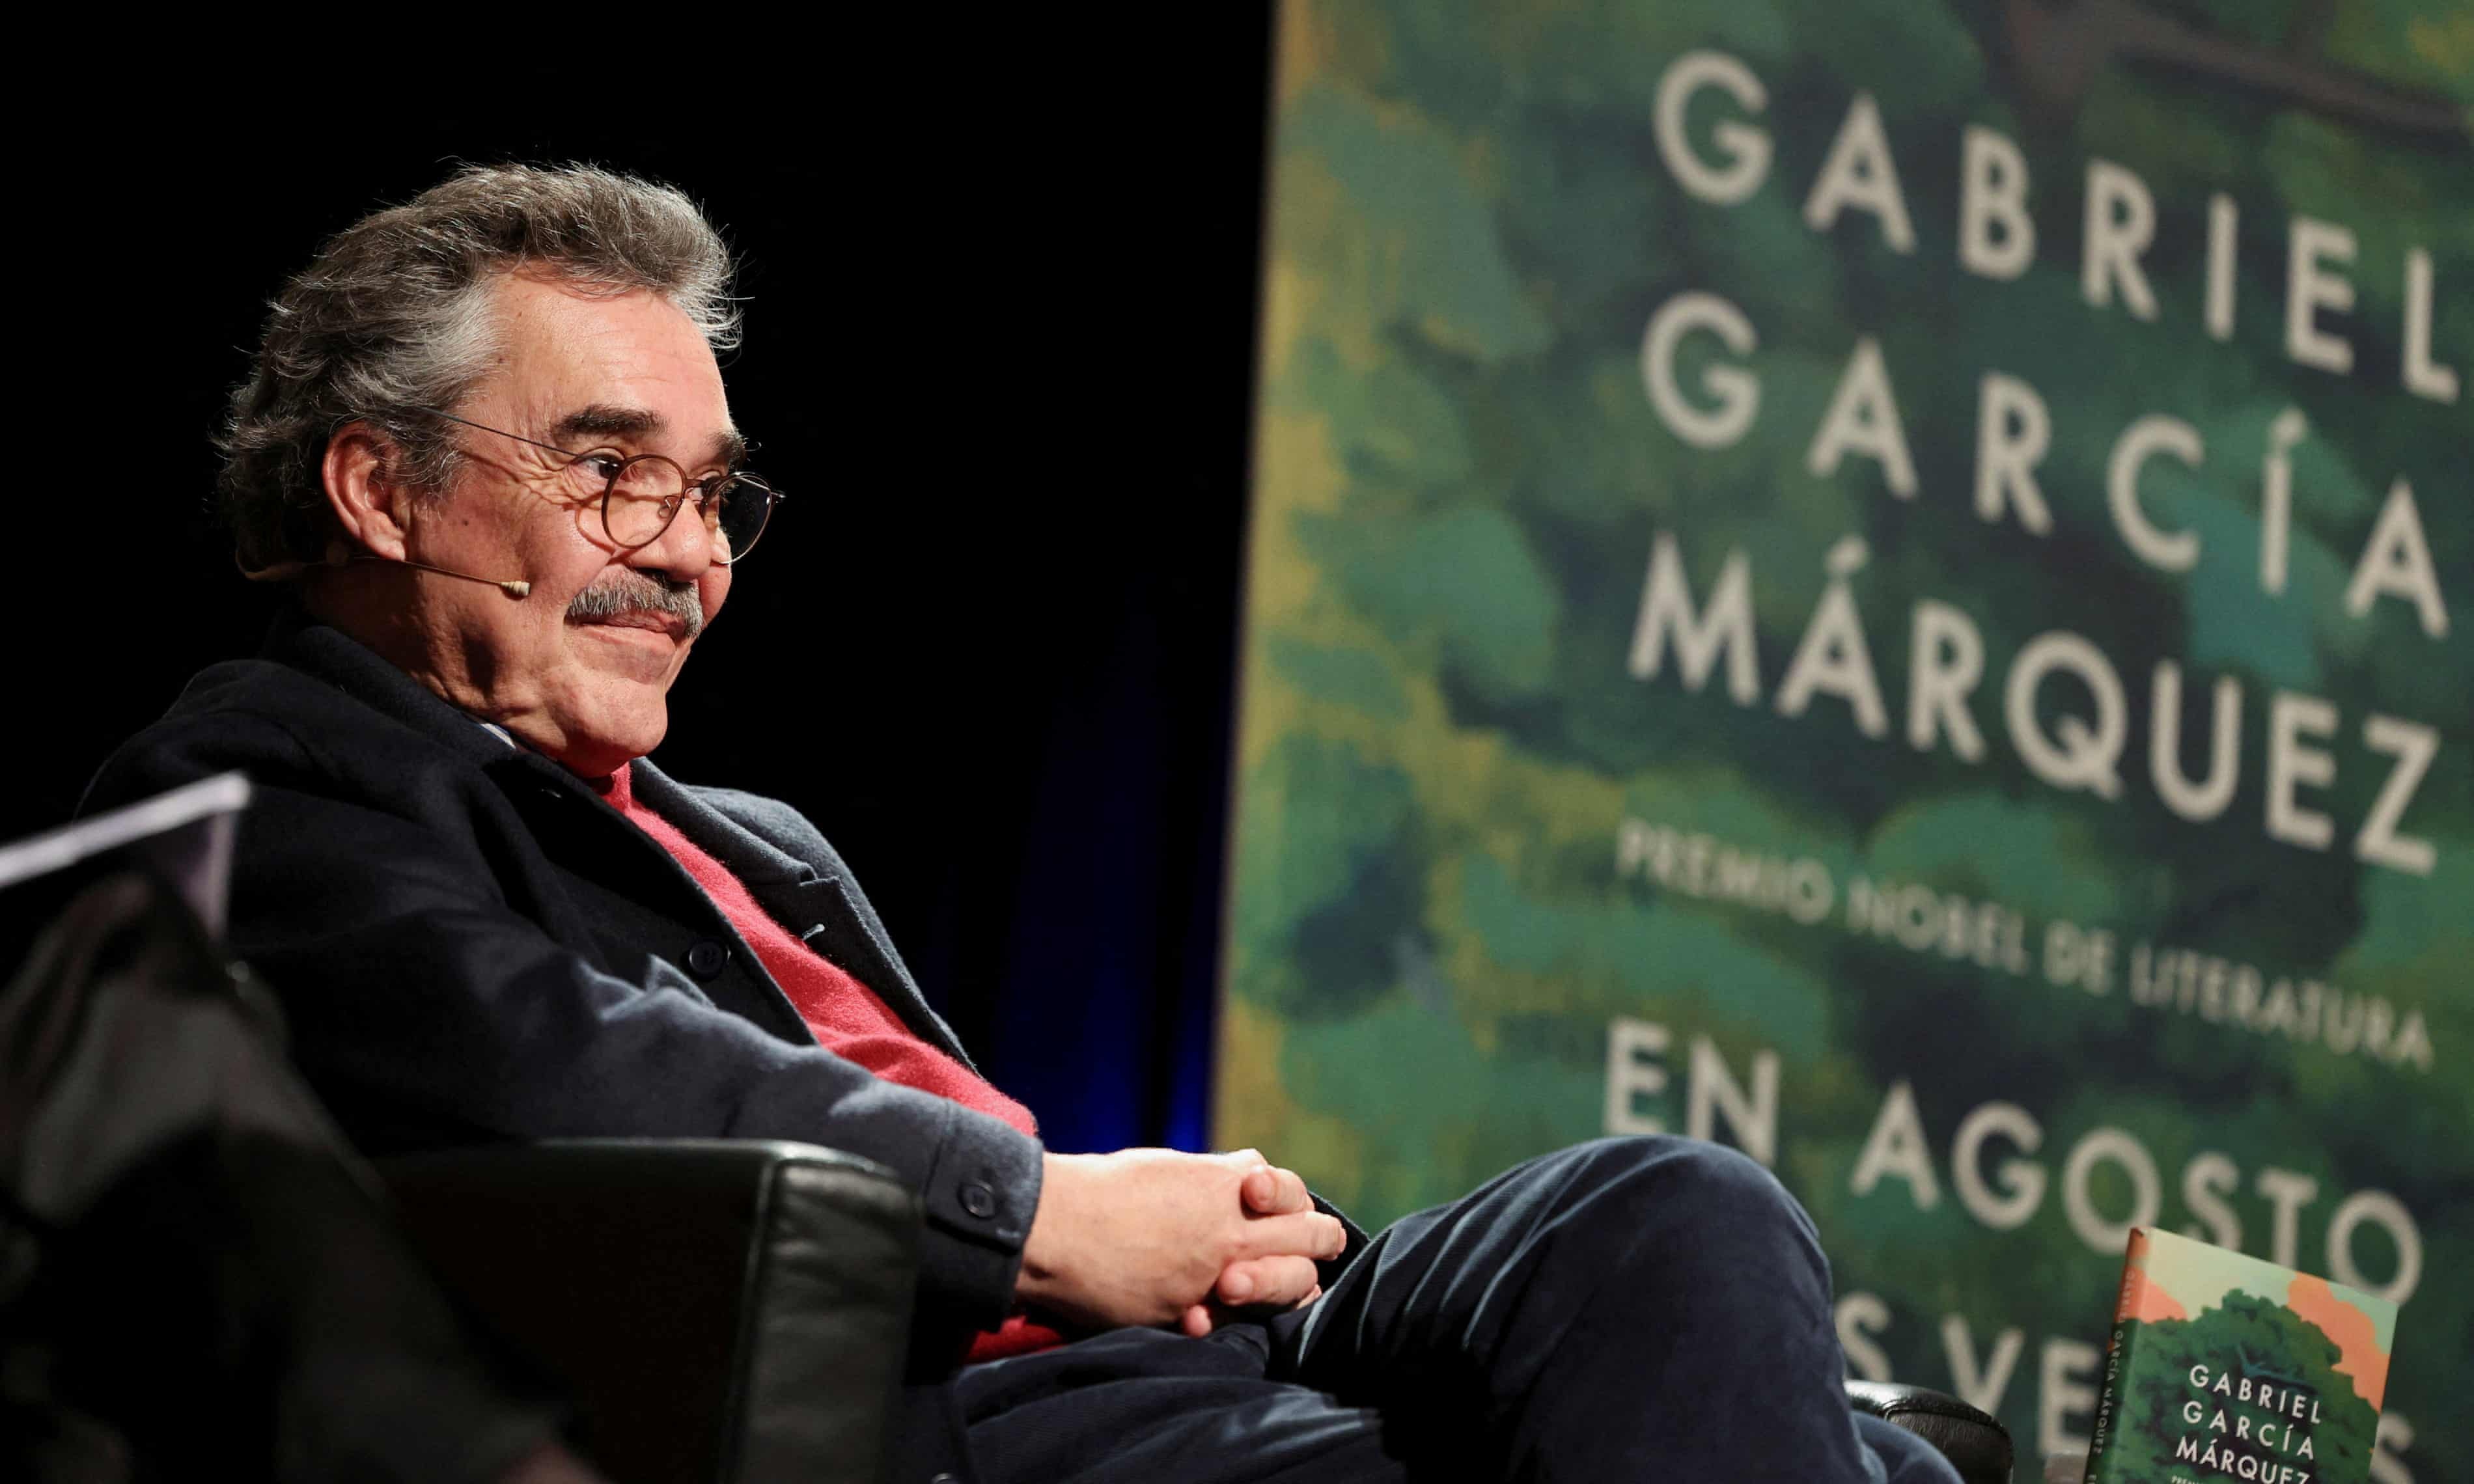 View - Con trai "phản bội" di nguyện tiêu hủy sách của Gabriel García Márquez | Báo Dân trí